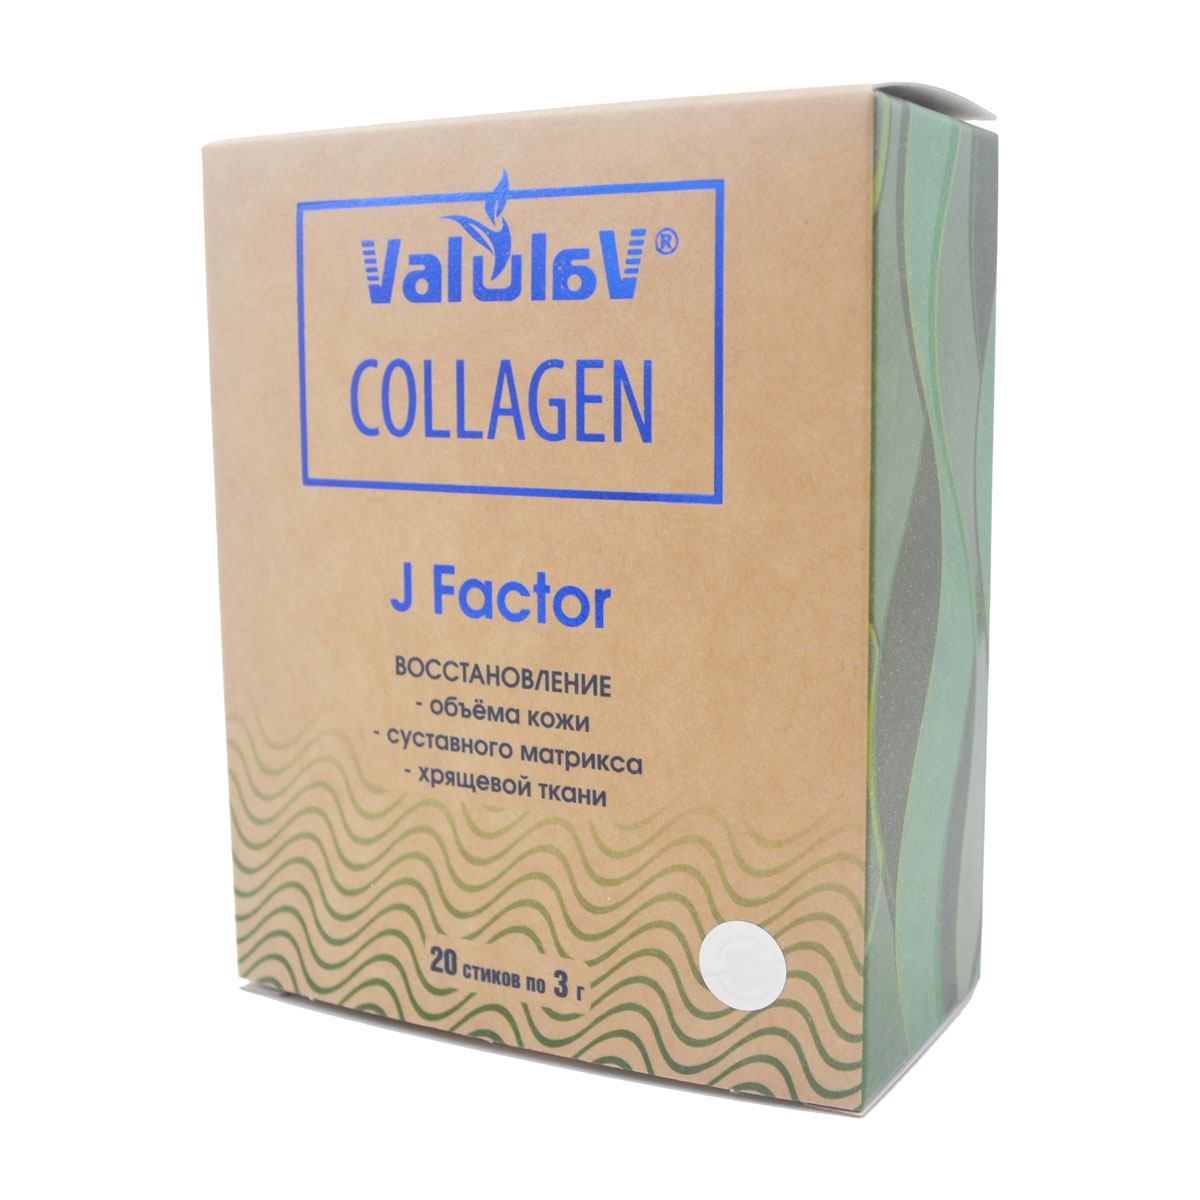 Коллаген морской в стиках. Marine Collagen в стиках. Valulav Collagen Multi Collagen Сашера мед. Valulav j Factor. Коллаген 20 стиков